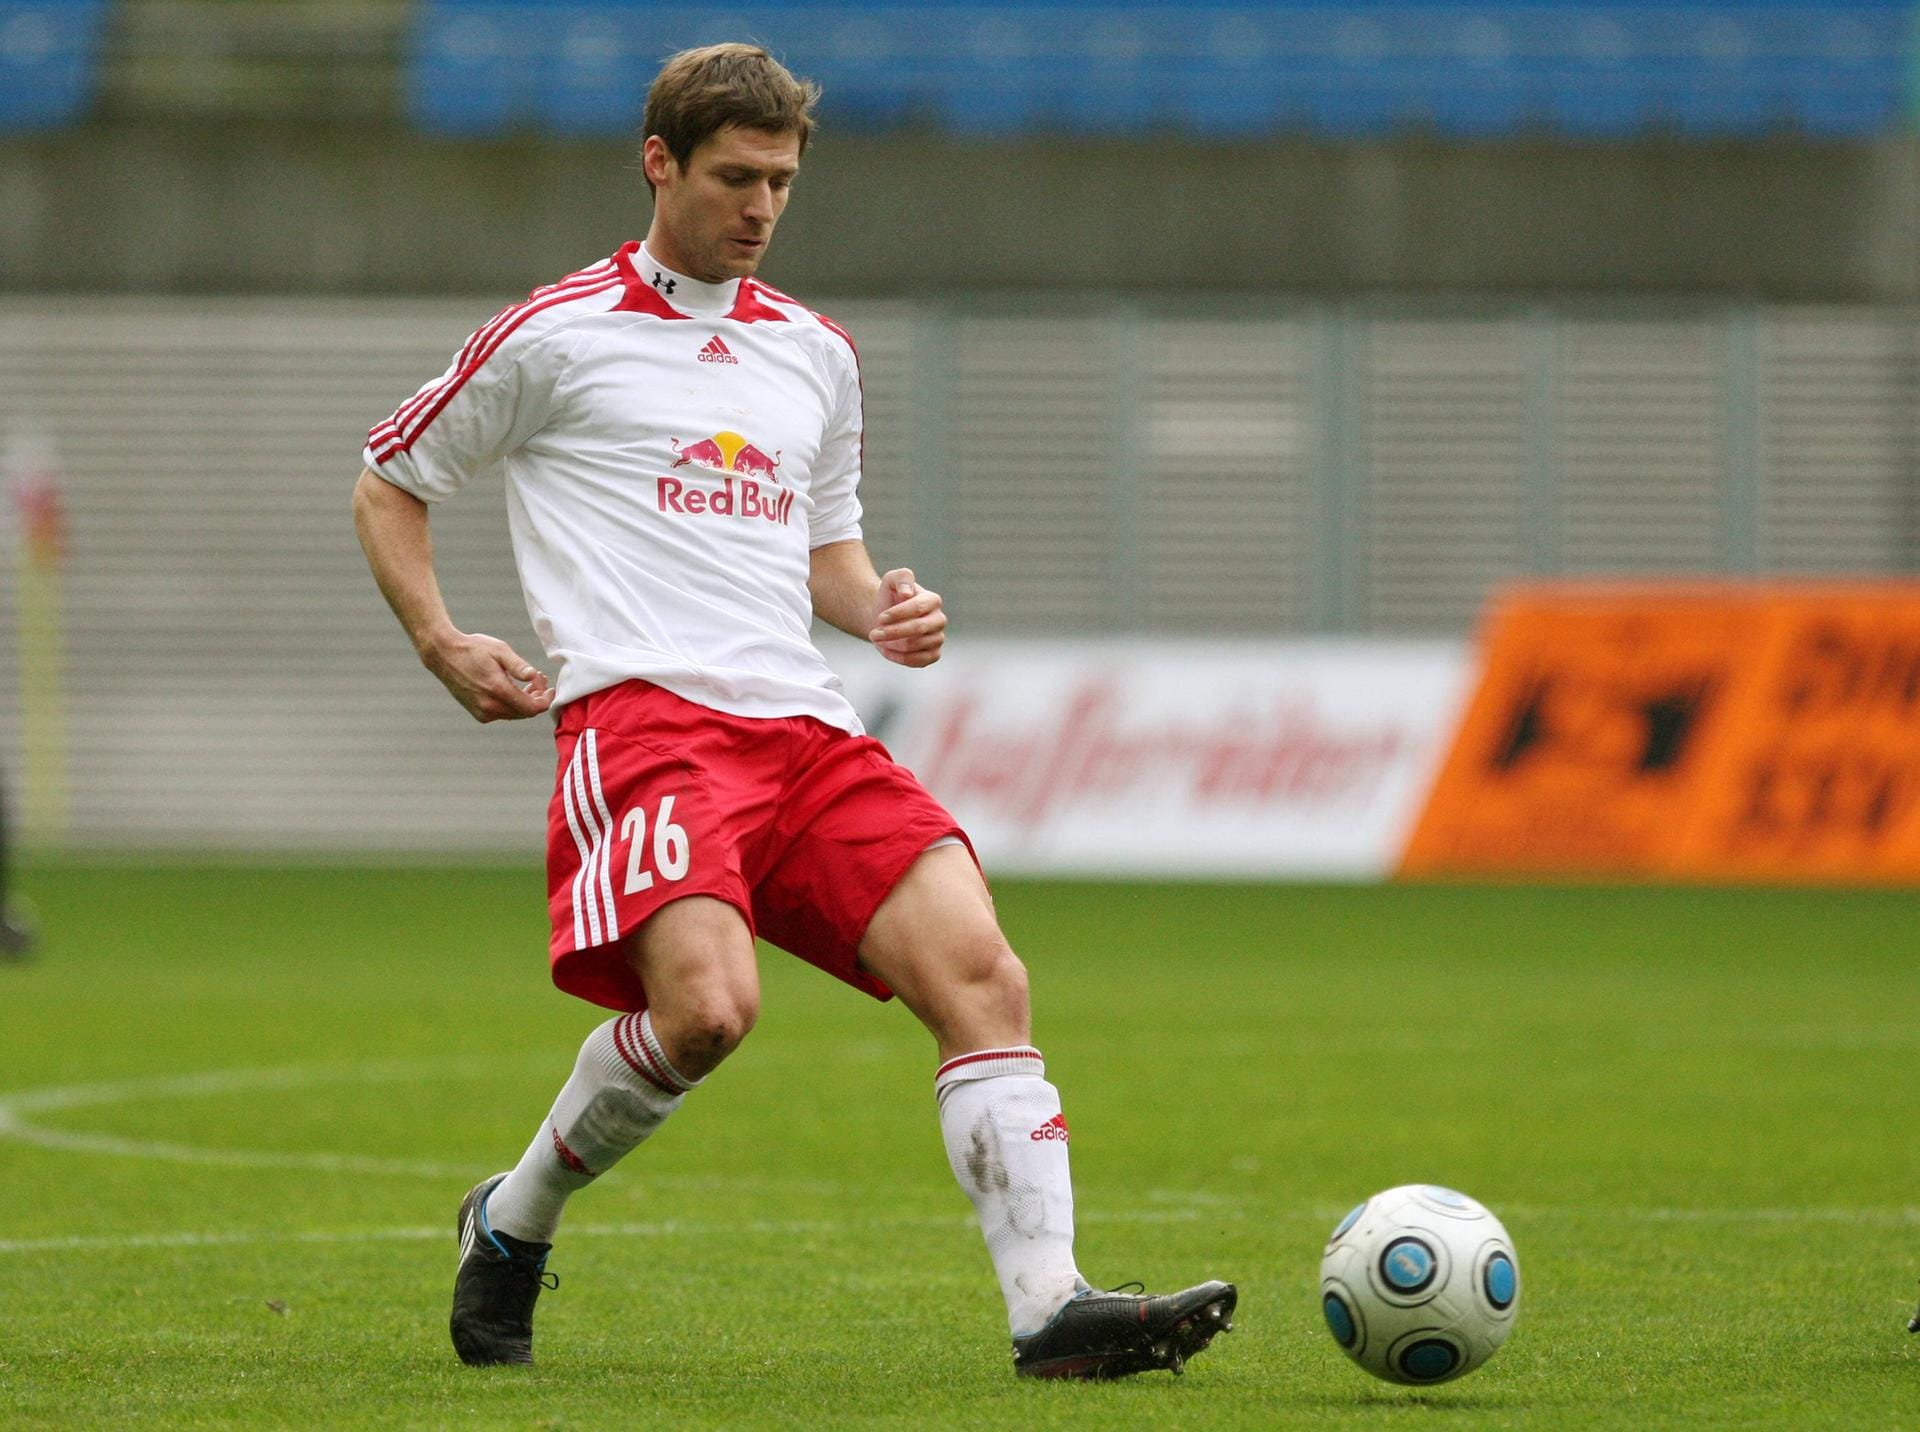 Patrick Bick (2009-2011): Er gilt als ein "Gründungsmitglied" von Leipzig. Mit 32 Jahren unterschrieb er bei den "Bullen" und war als Routinier im Mittelfeld Stammkraft beim Aufstieg in die Regionalliga. Heute betreibt er eine Osteopathiepraxis in Leipzig.